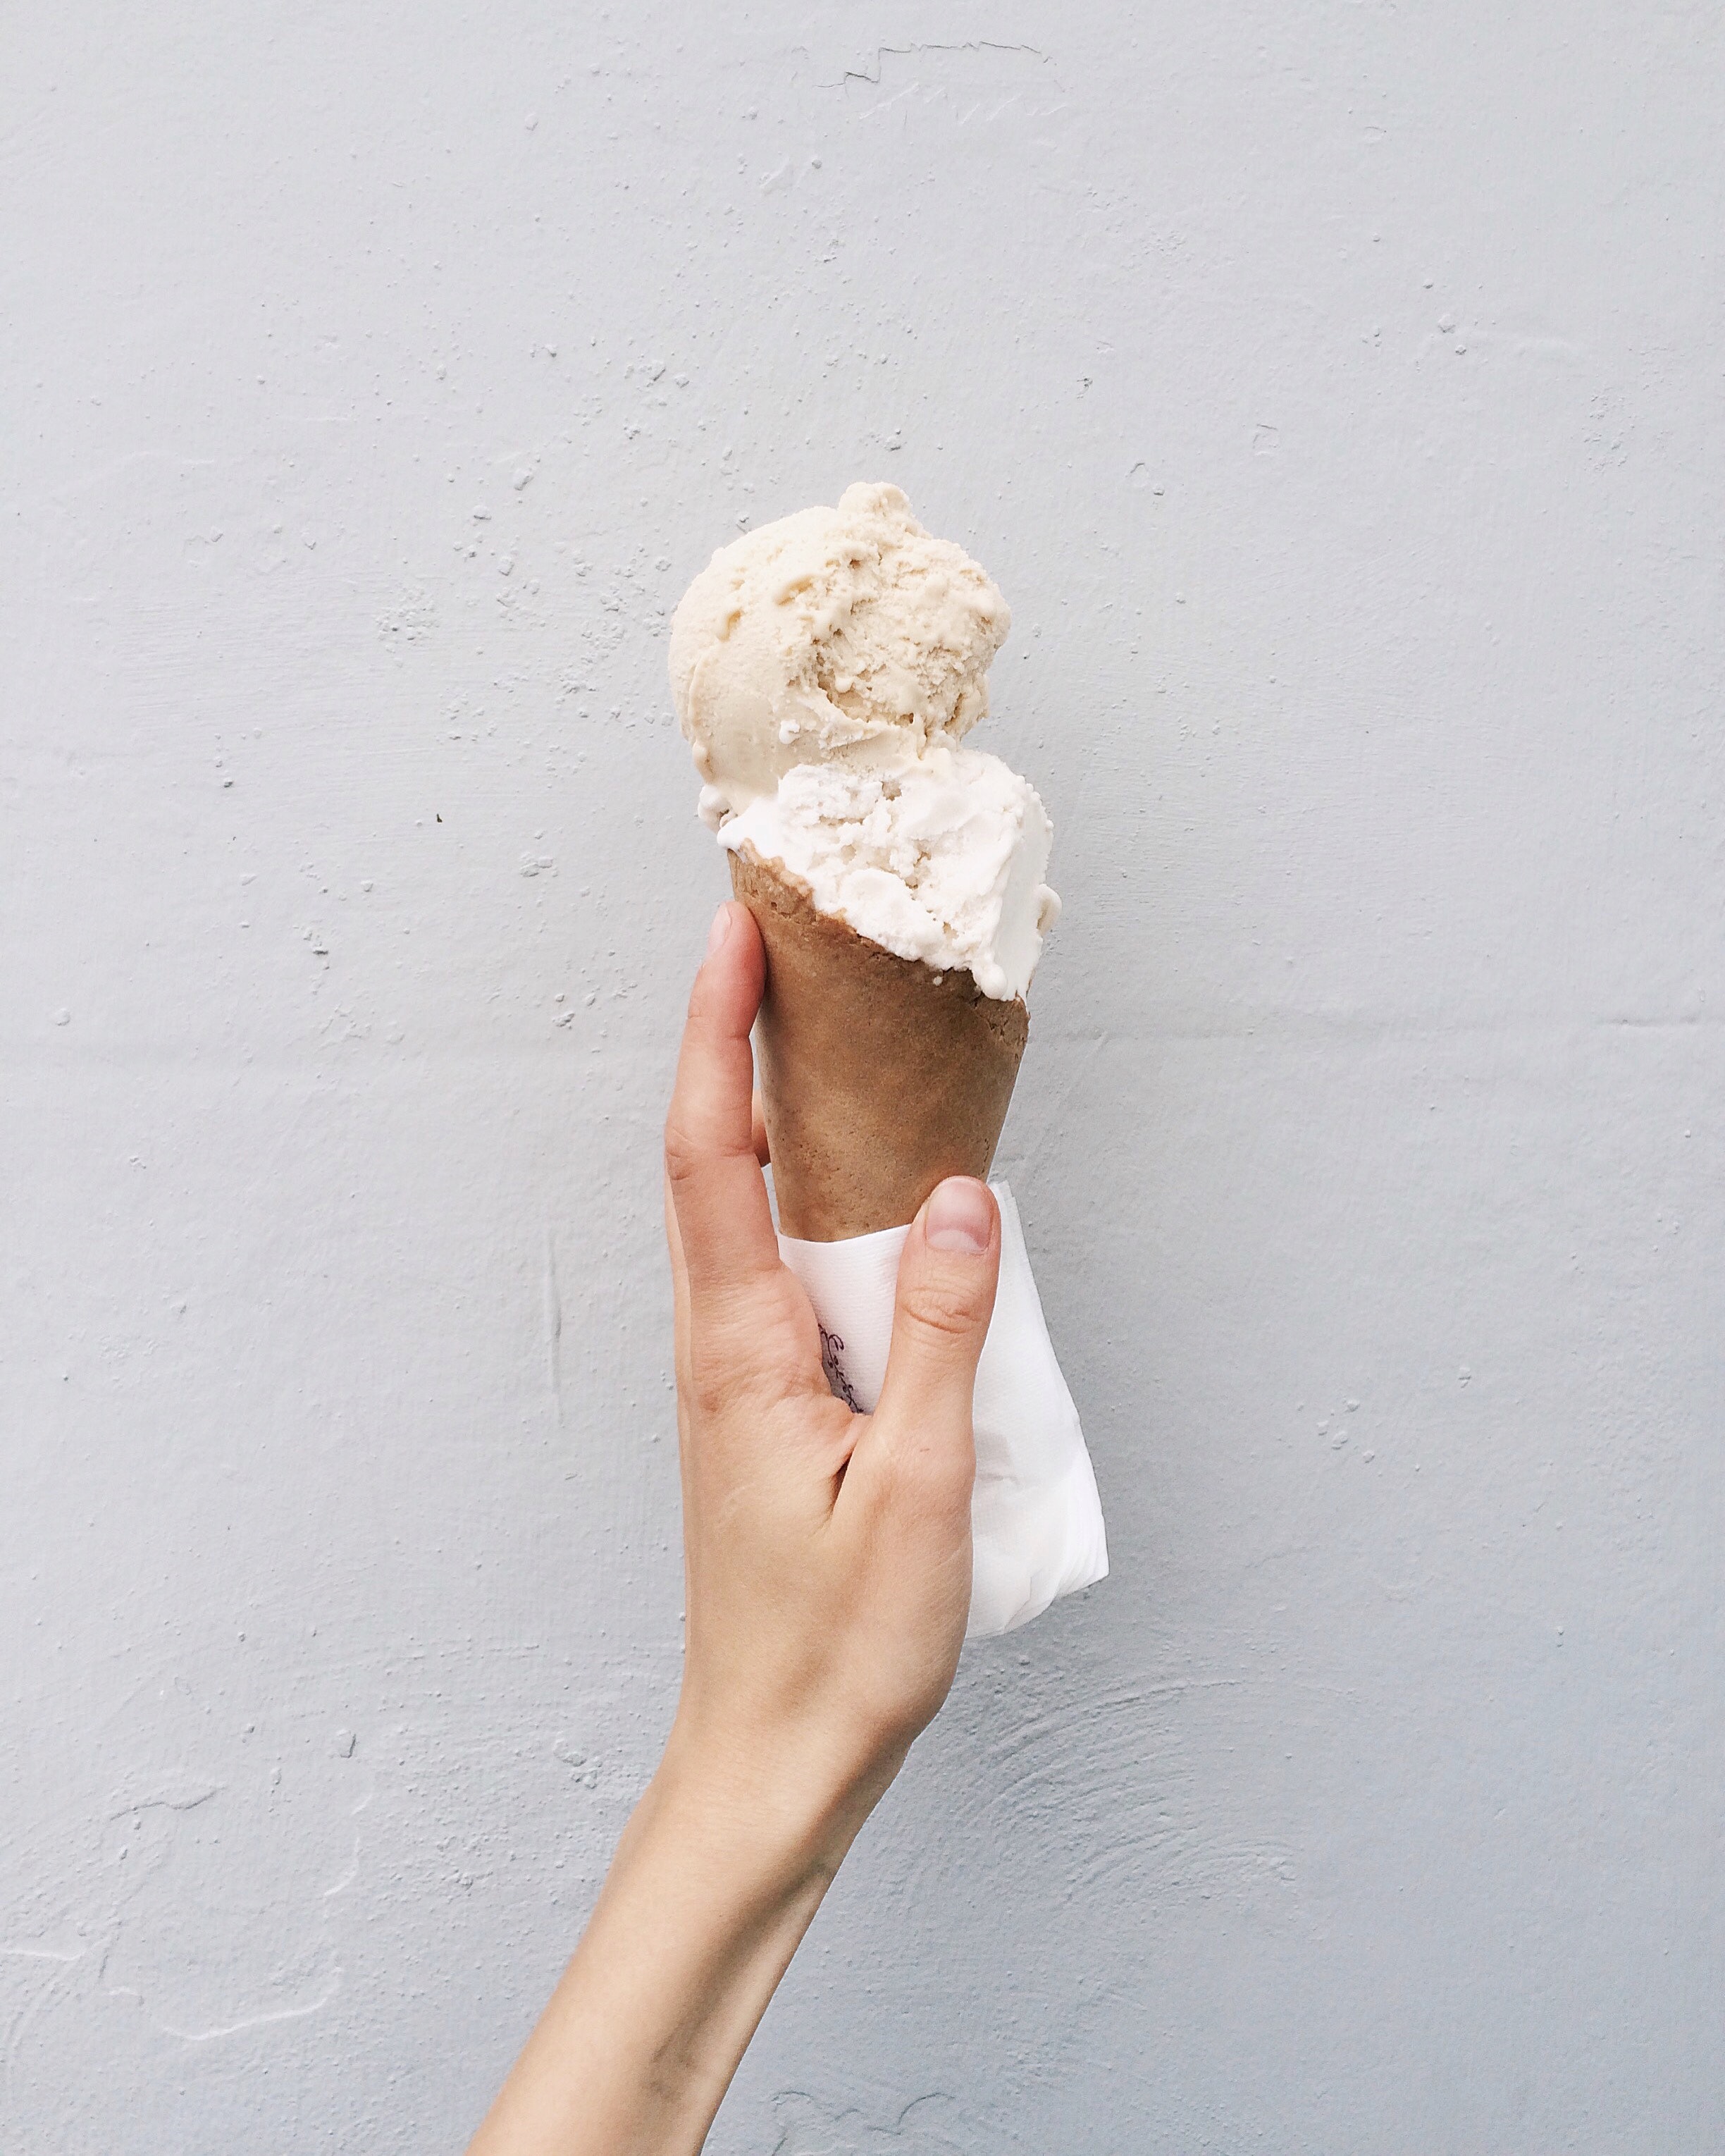 ¿Cómo hacer helado casero? - Helado de vainilla. @DariaShevtsova en Pexels.